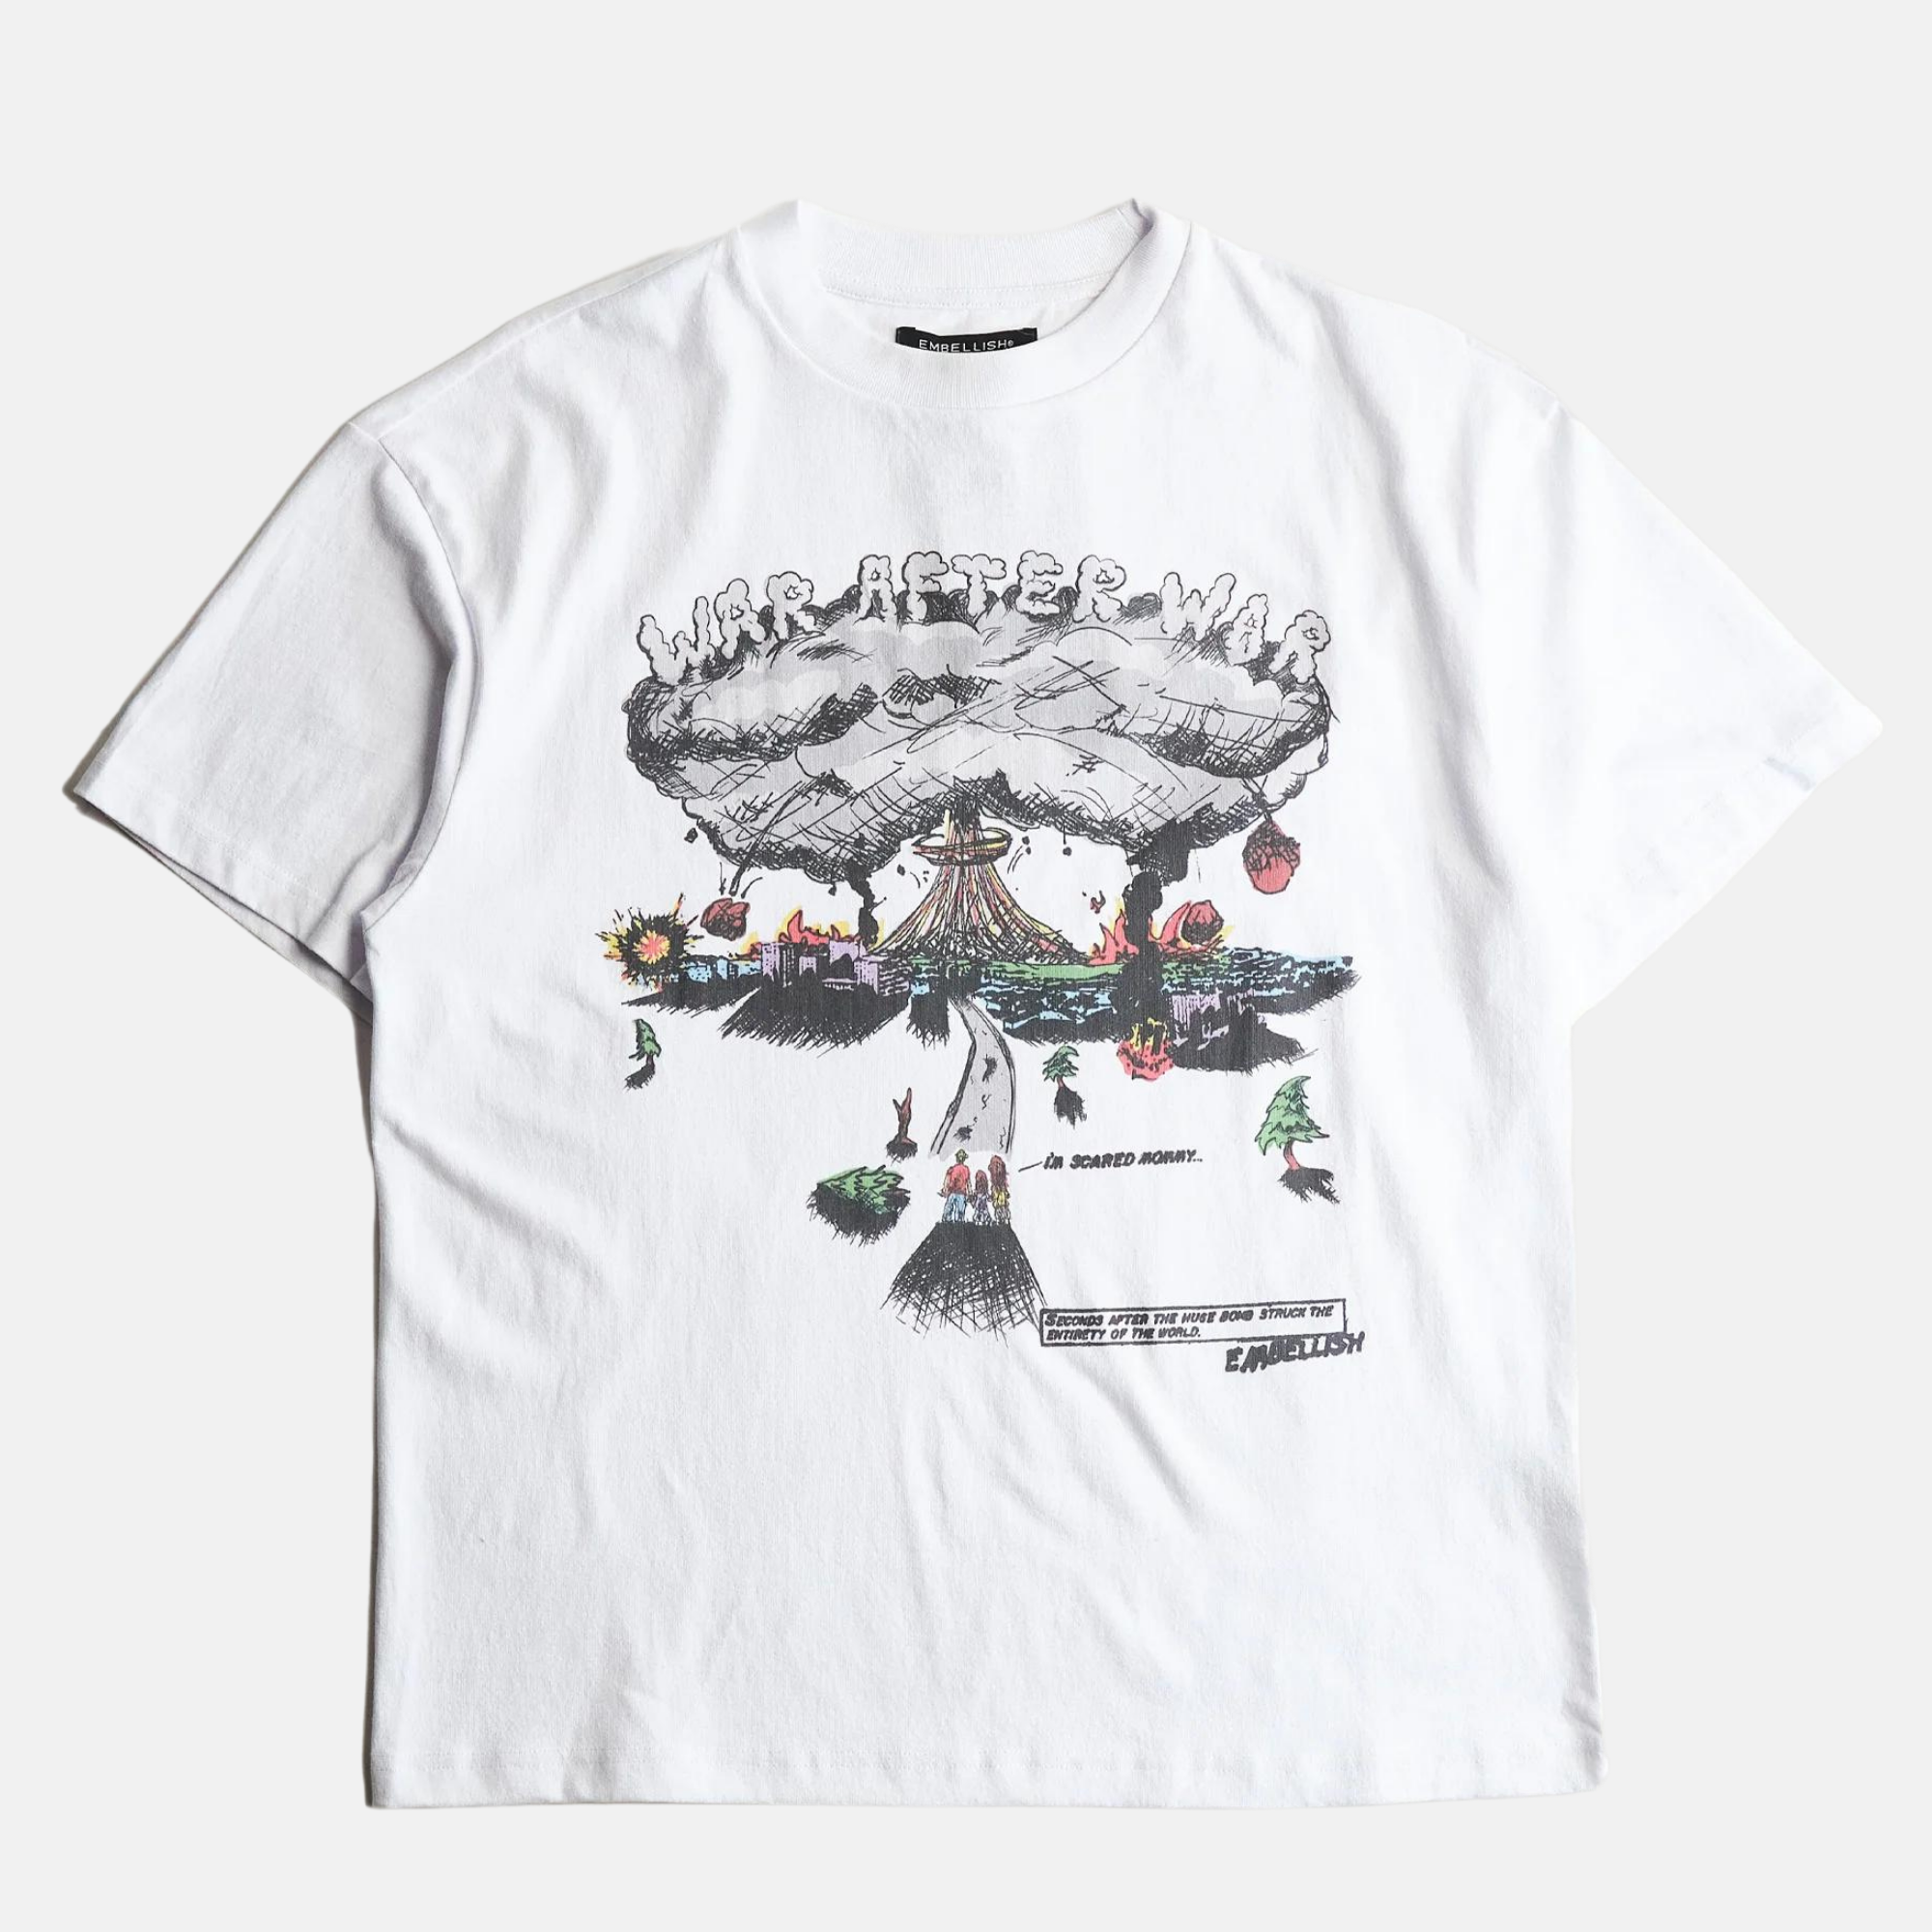 Embellish Atomic White T-Shirt